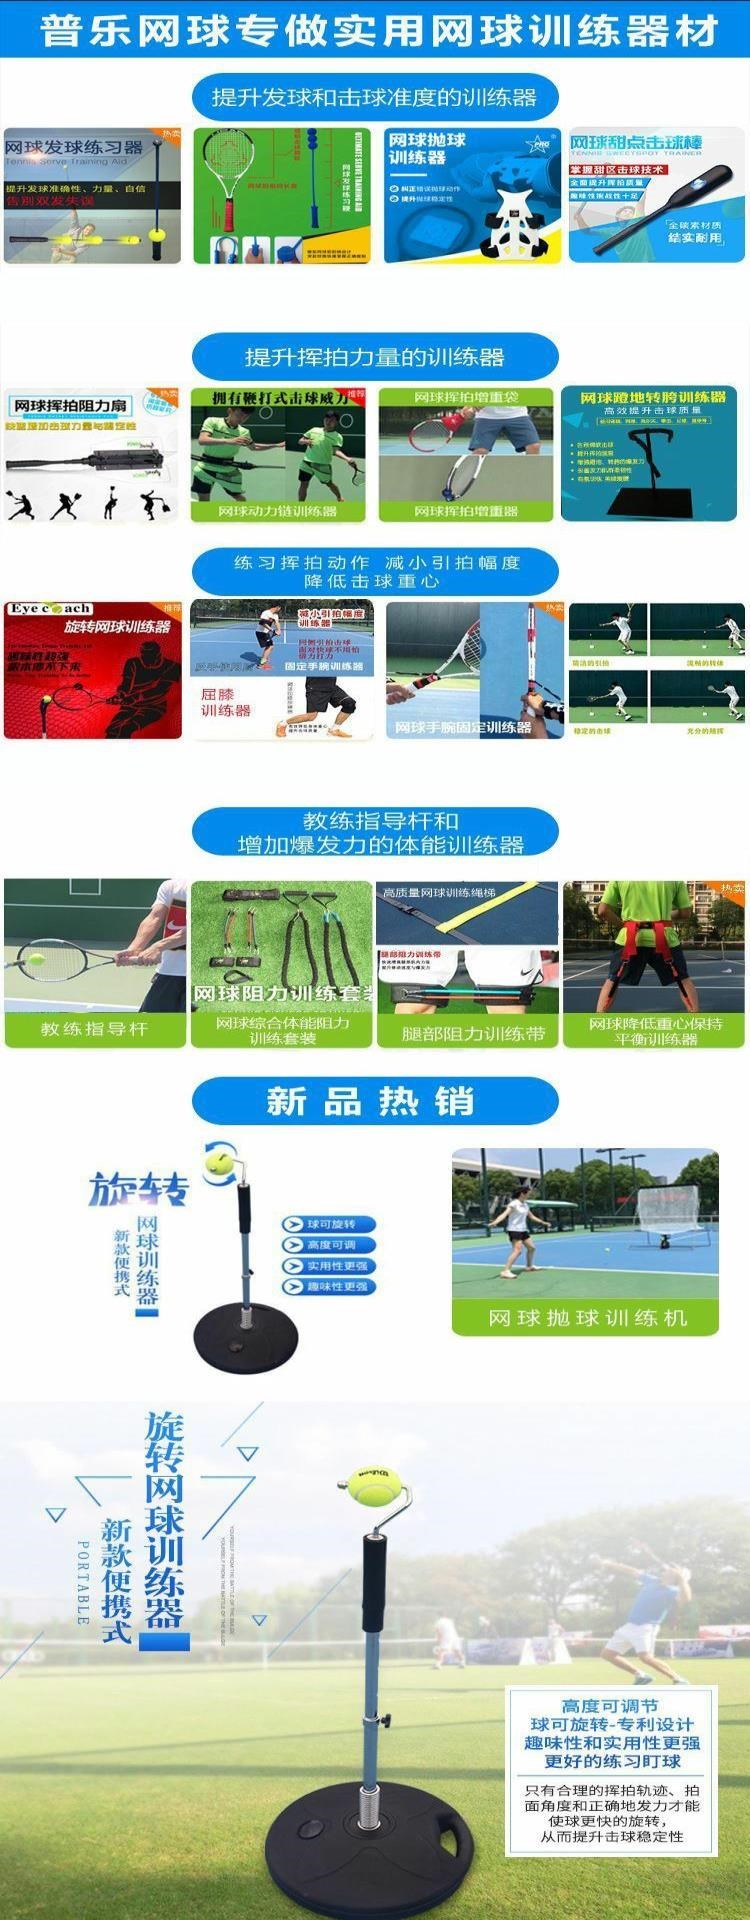 Tay cầm thiết bị chống trượt dành cho người lớn, luyện tay, cầm nắm nhanh, luyện tập, cố định cổ tay quần vợt chính xác - Quần vợt